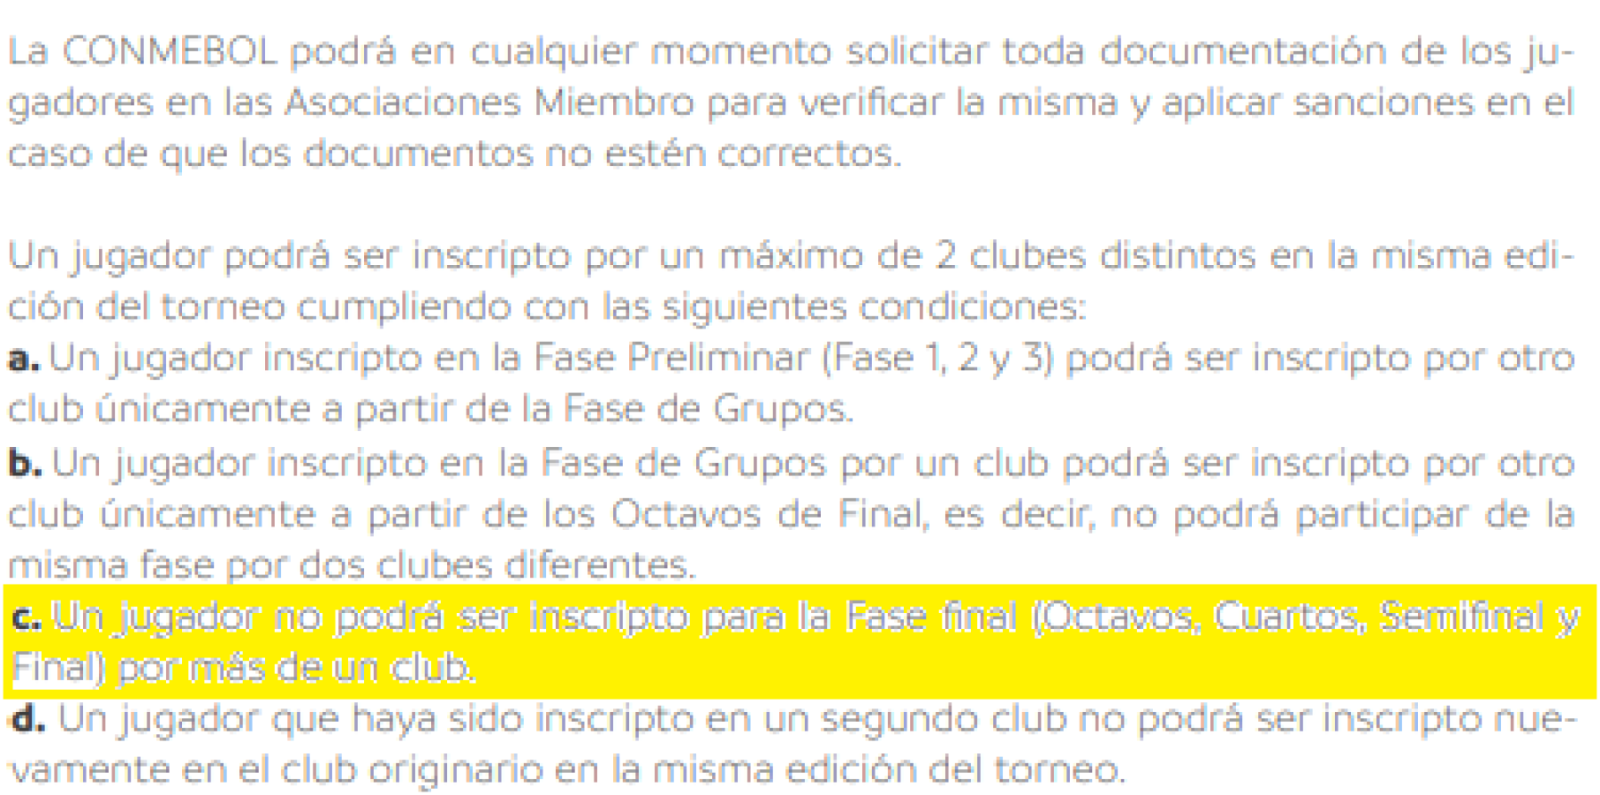 Imagen El reglamento de la Conmebol Libertadores es claro: si juega para Colón no podrá hacerlo para River más adelante.